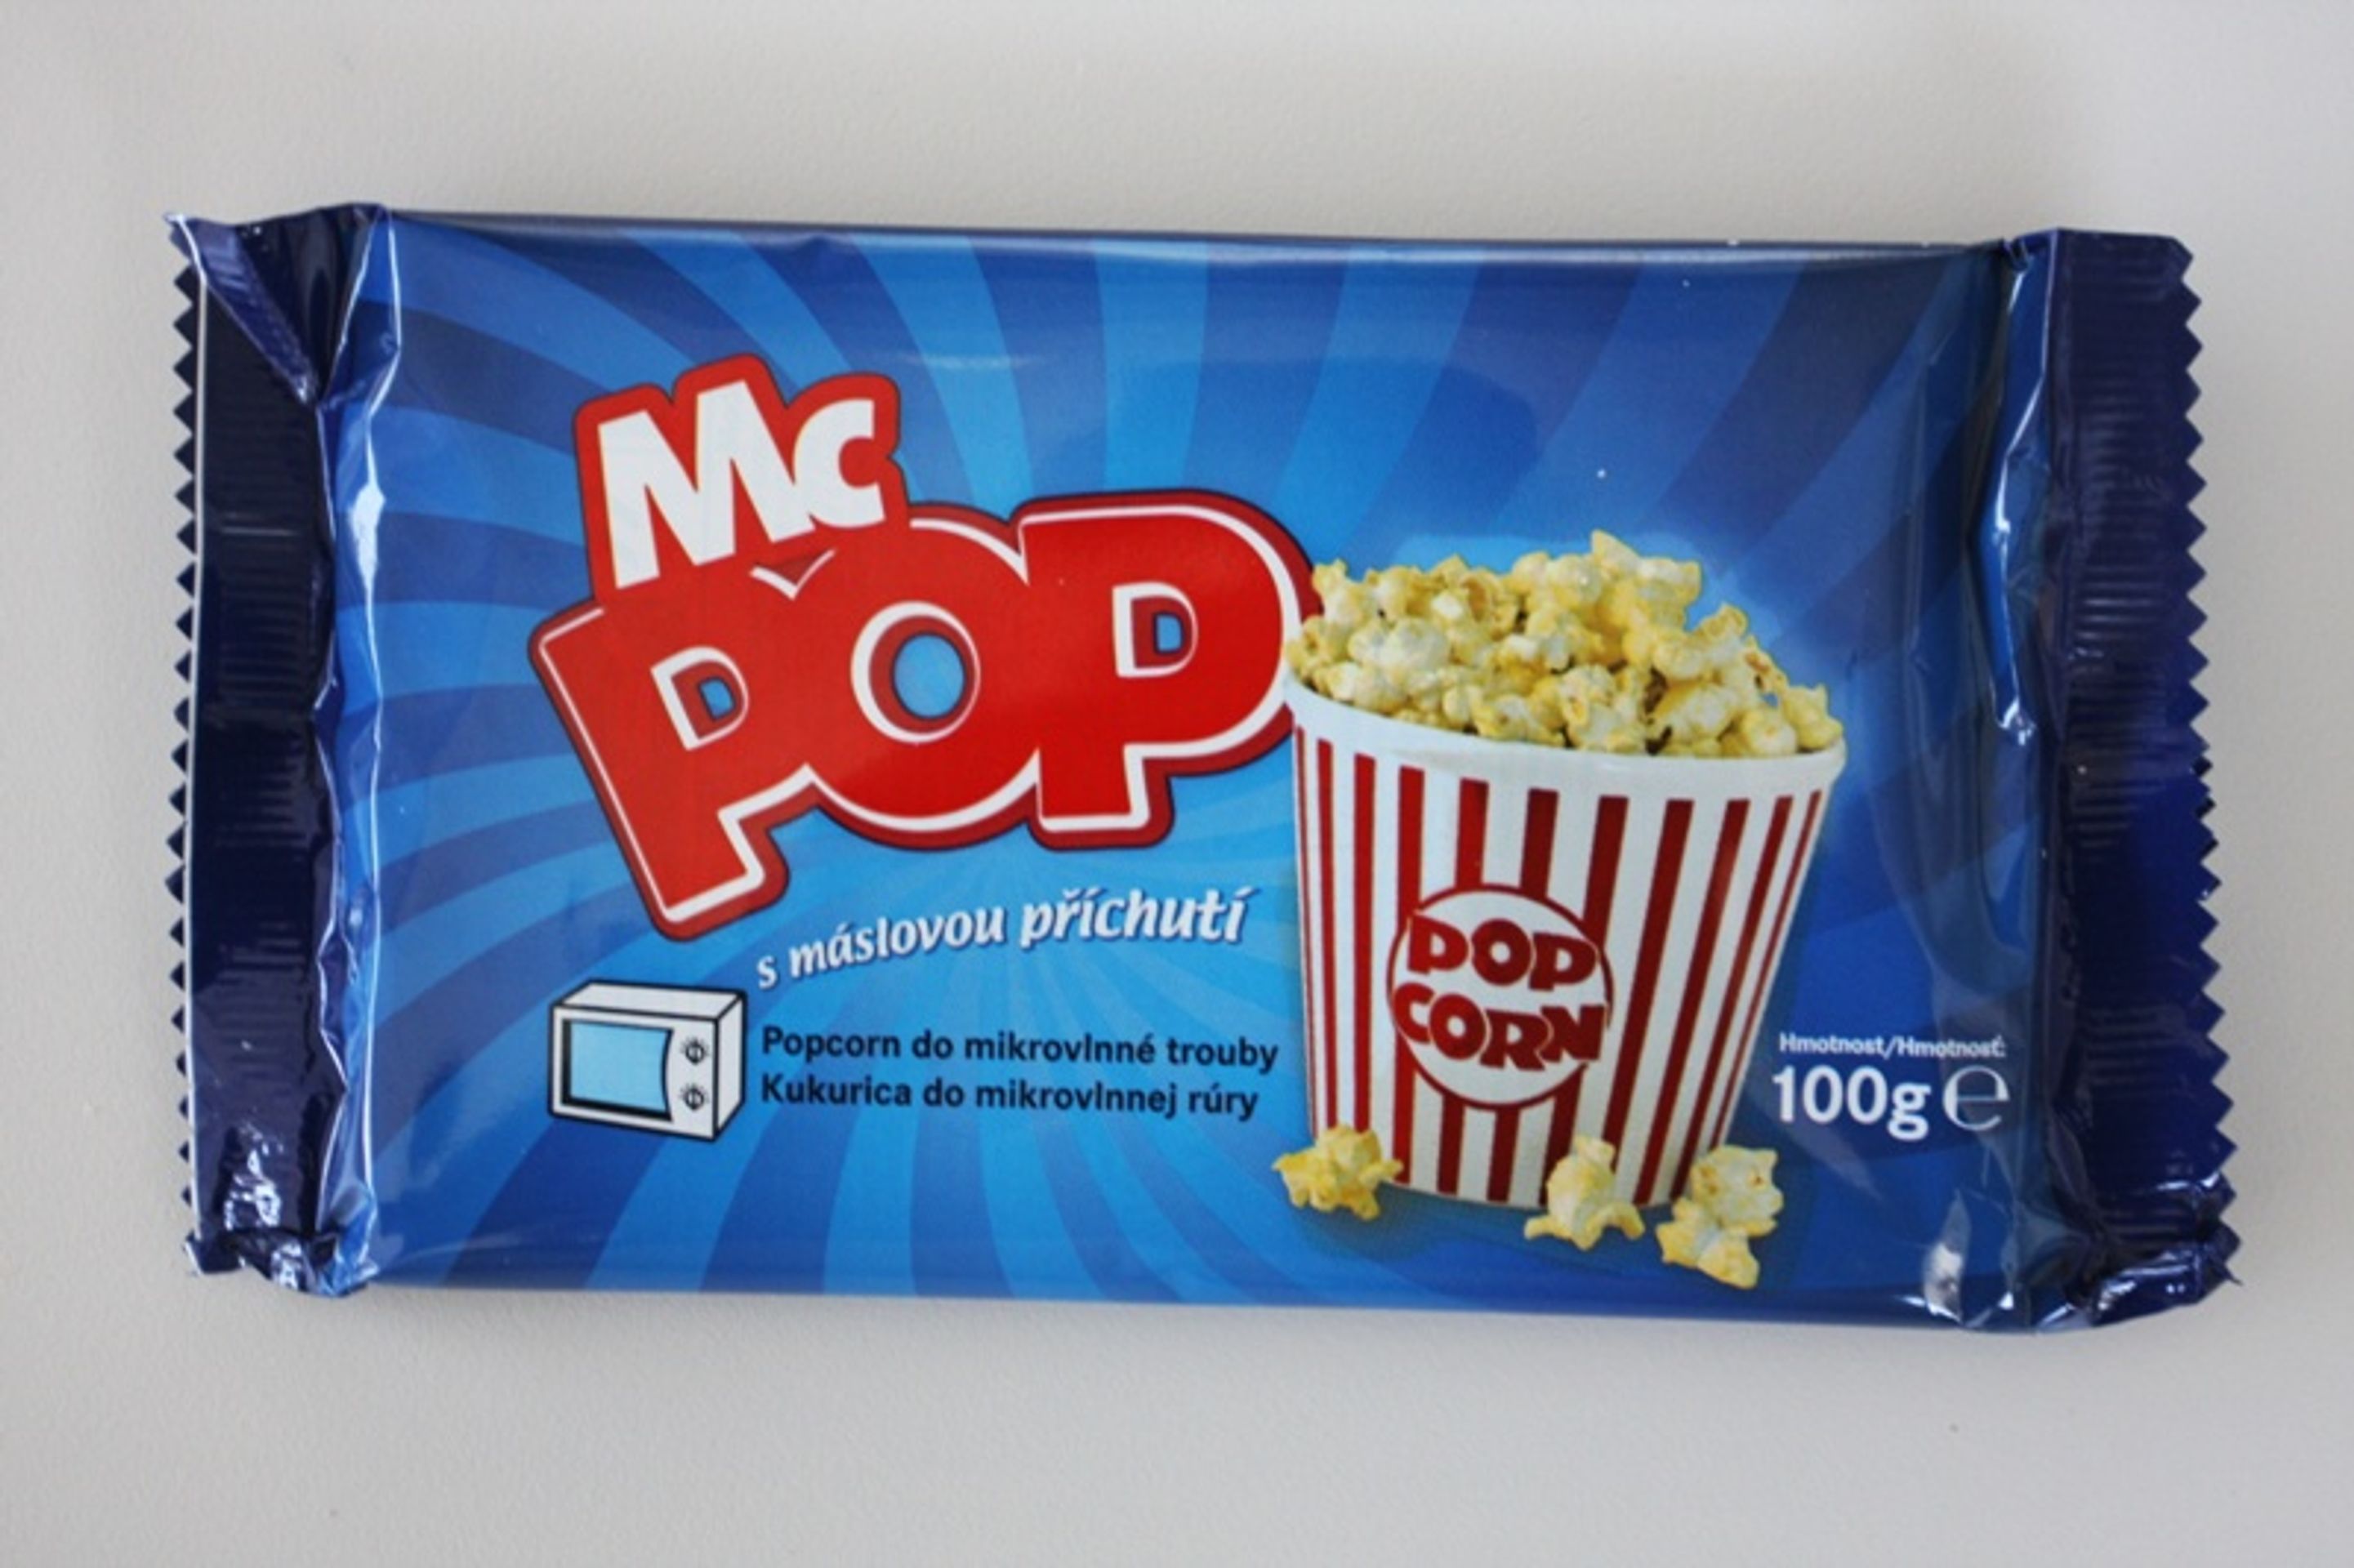 2. - 3. místo: McPop: Popcorn do mikrovlnné trouby s máslovou příchutí - GALERIE: Test popcornů s máslovou příchutí (3/16)